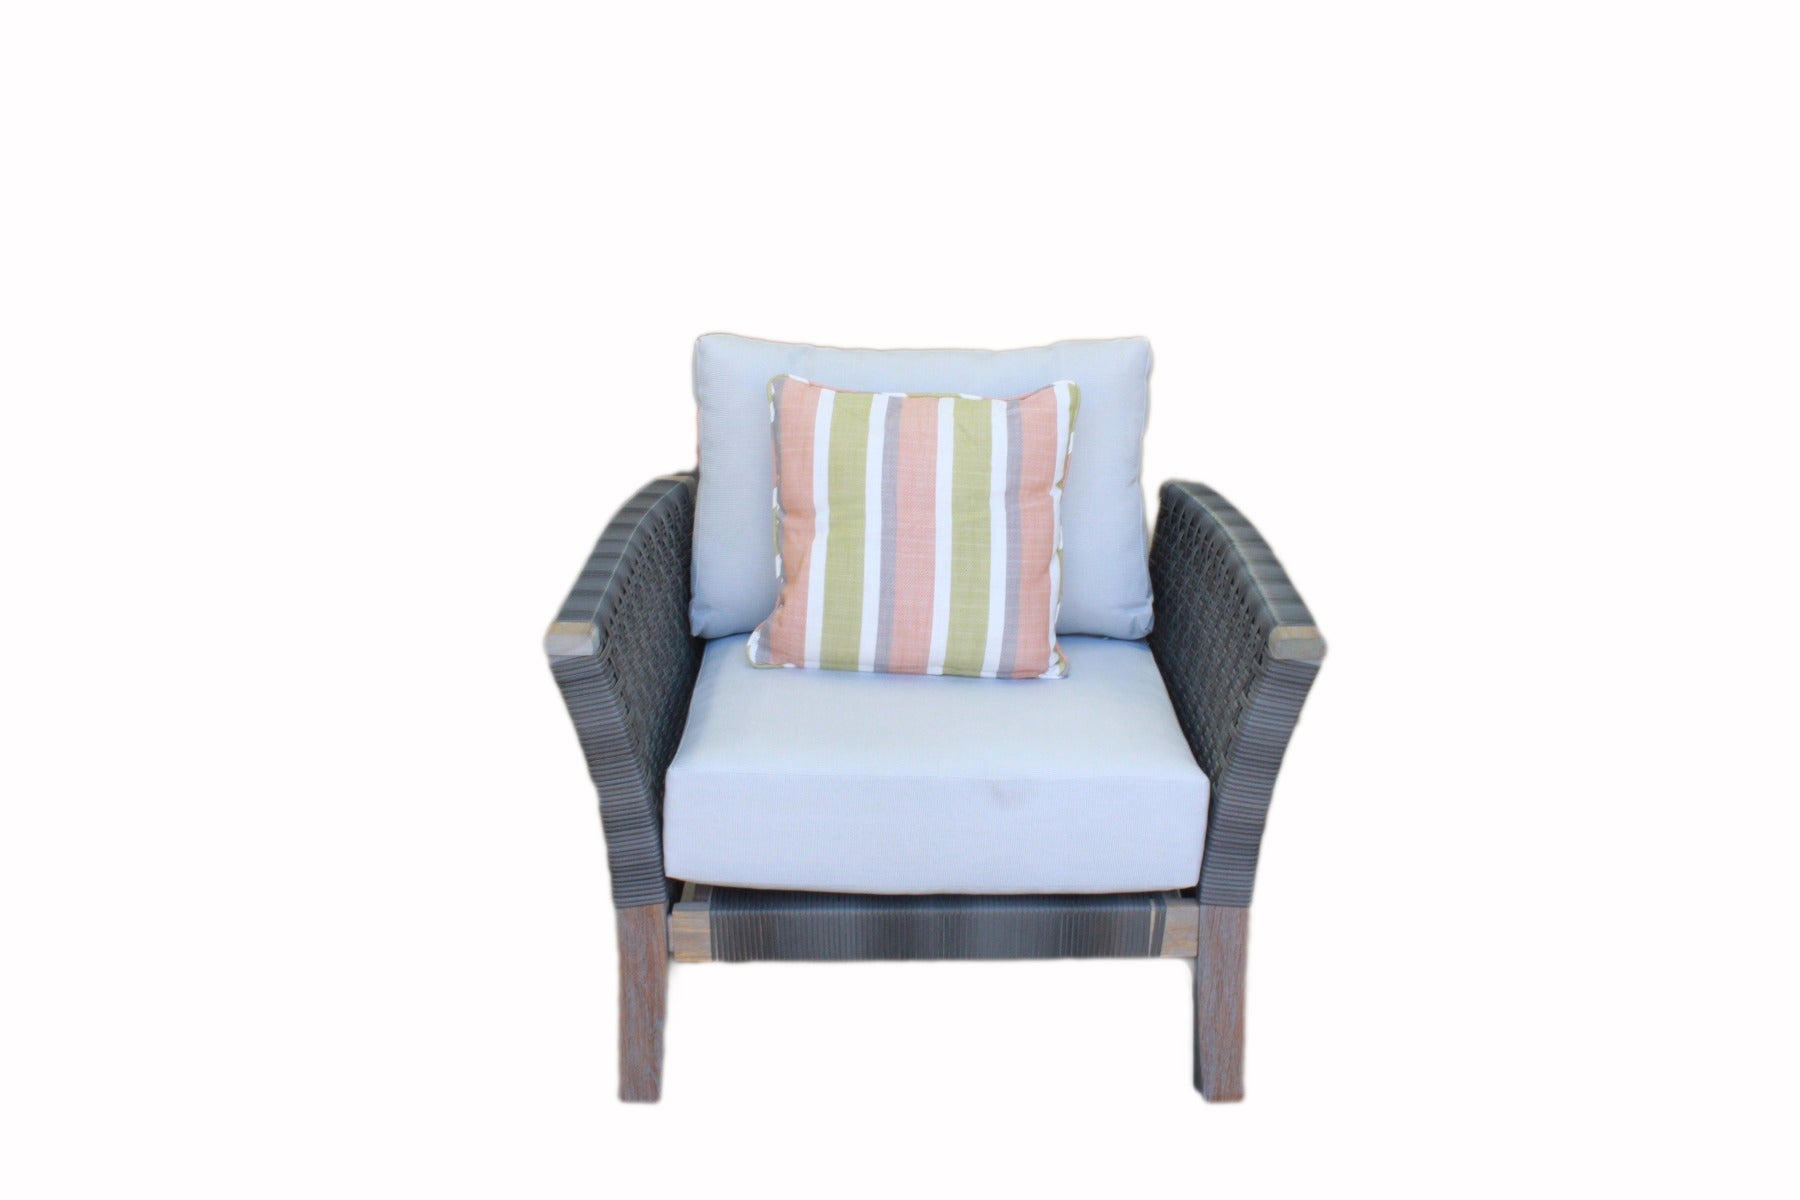 Armchair Indoor Outdoor Wicker Rattan Woven - Gray